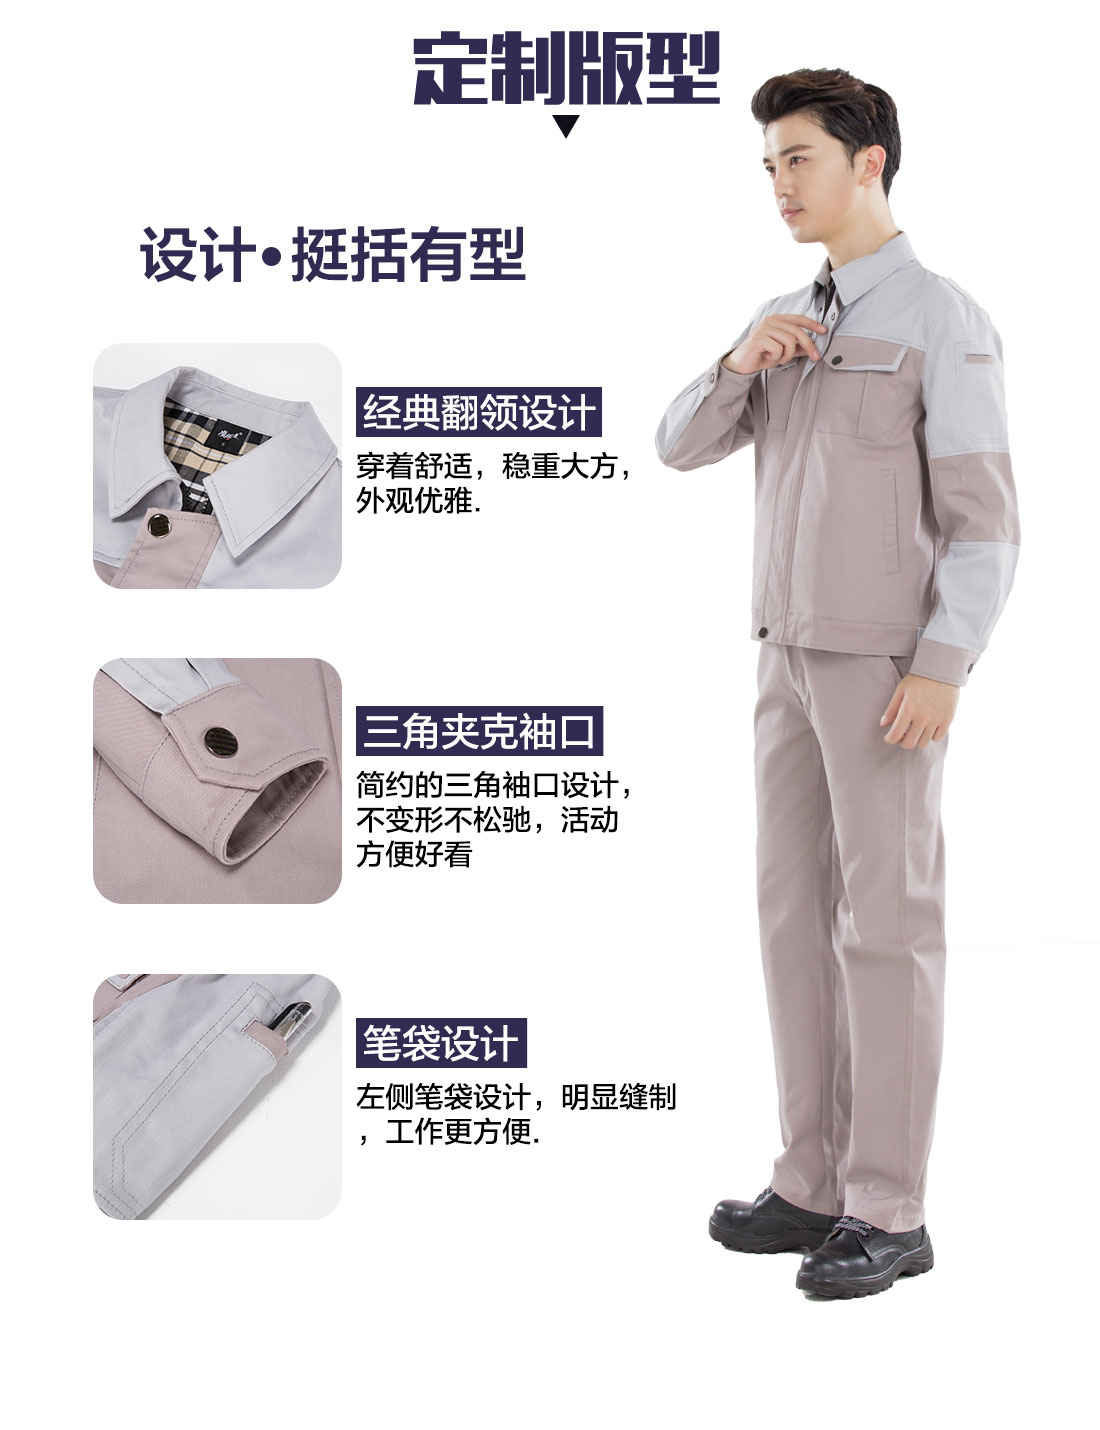 滨州工作服的3D立体版型设计